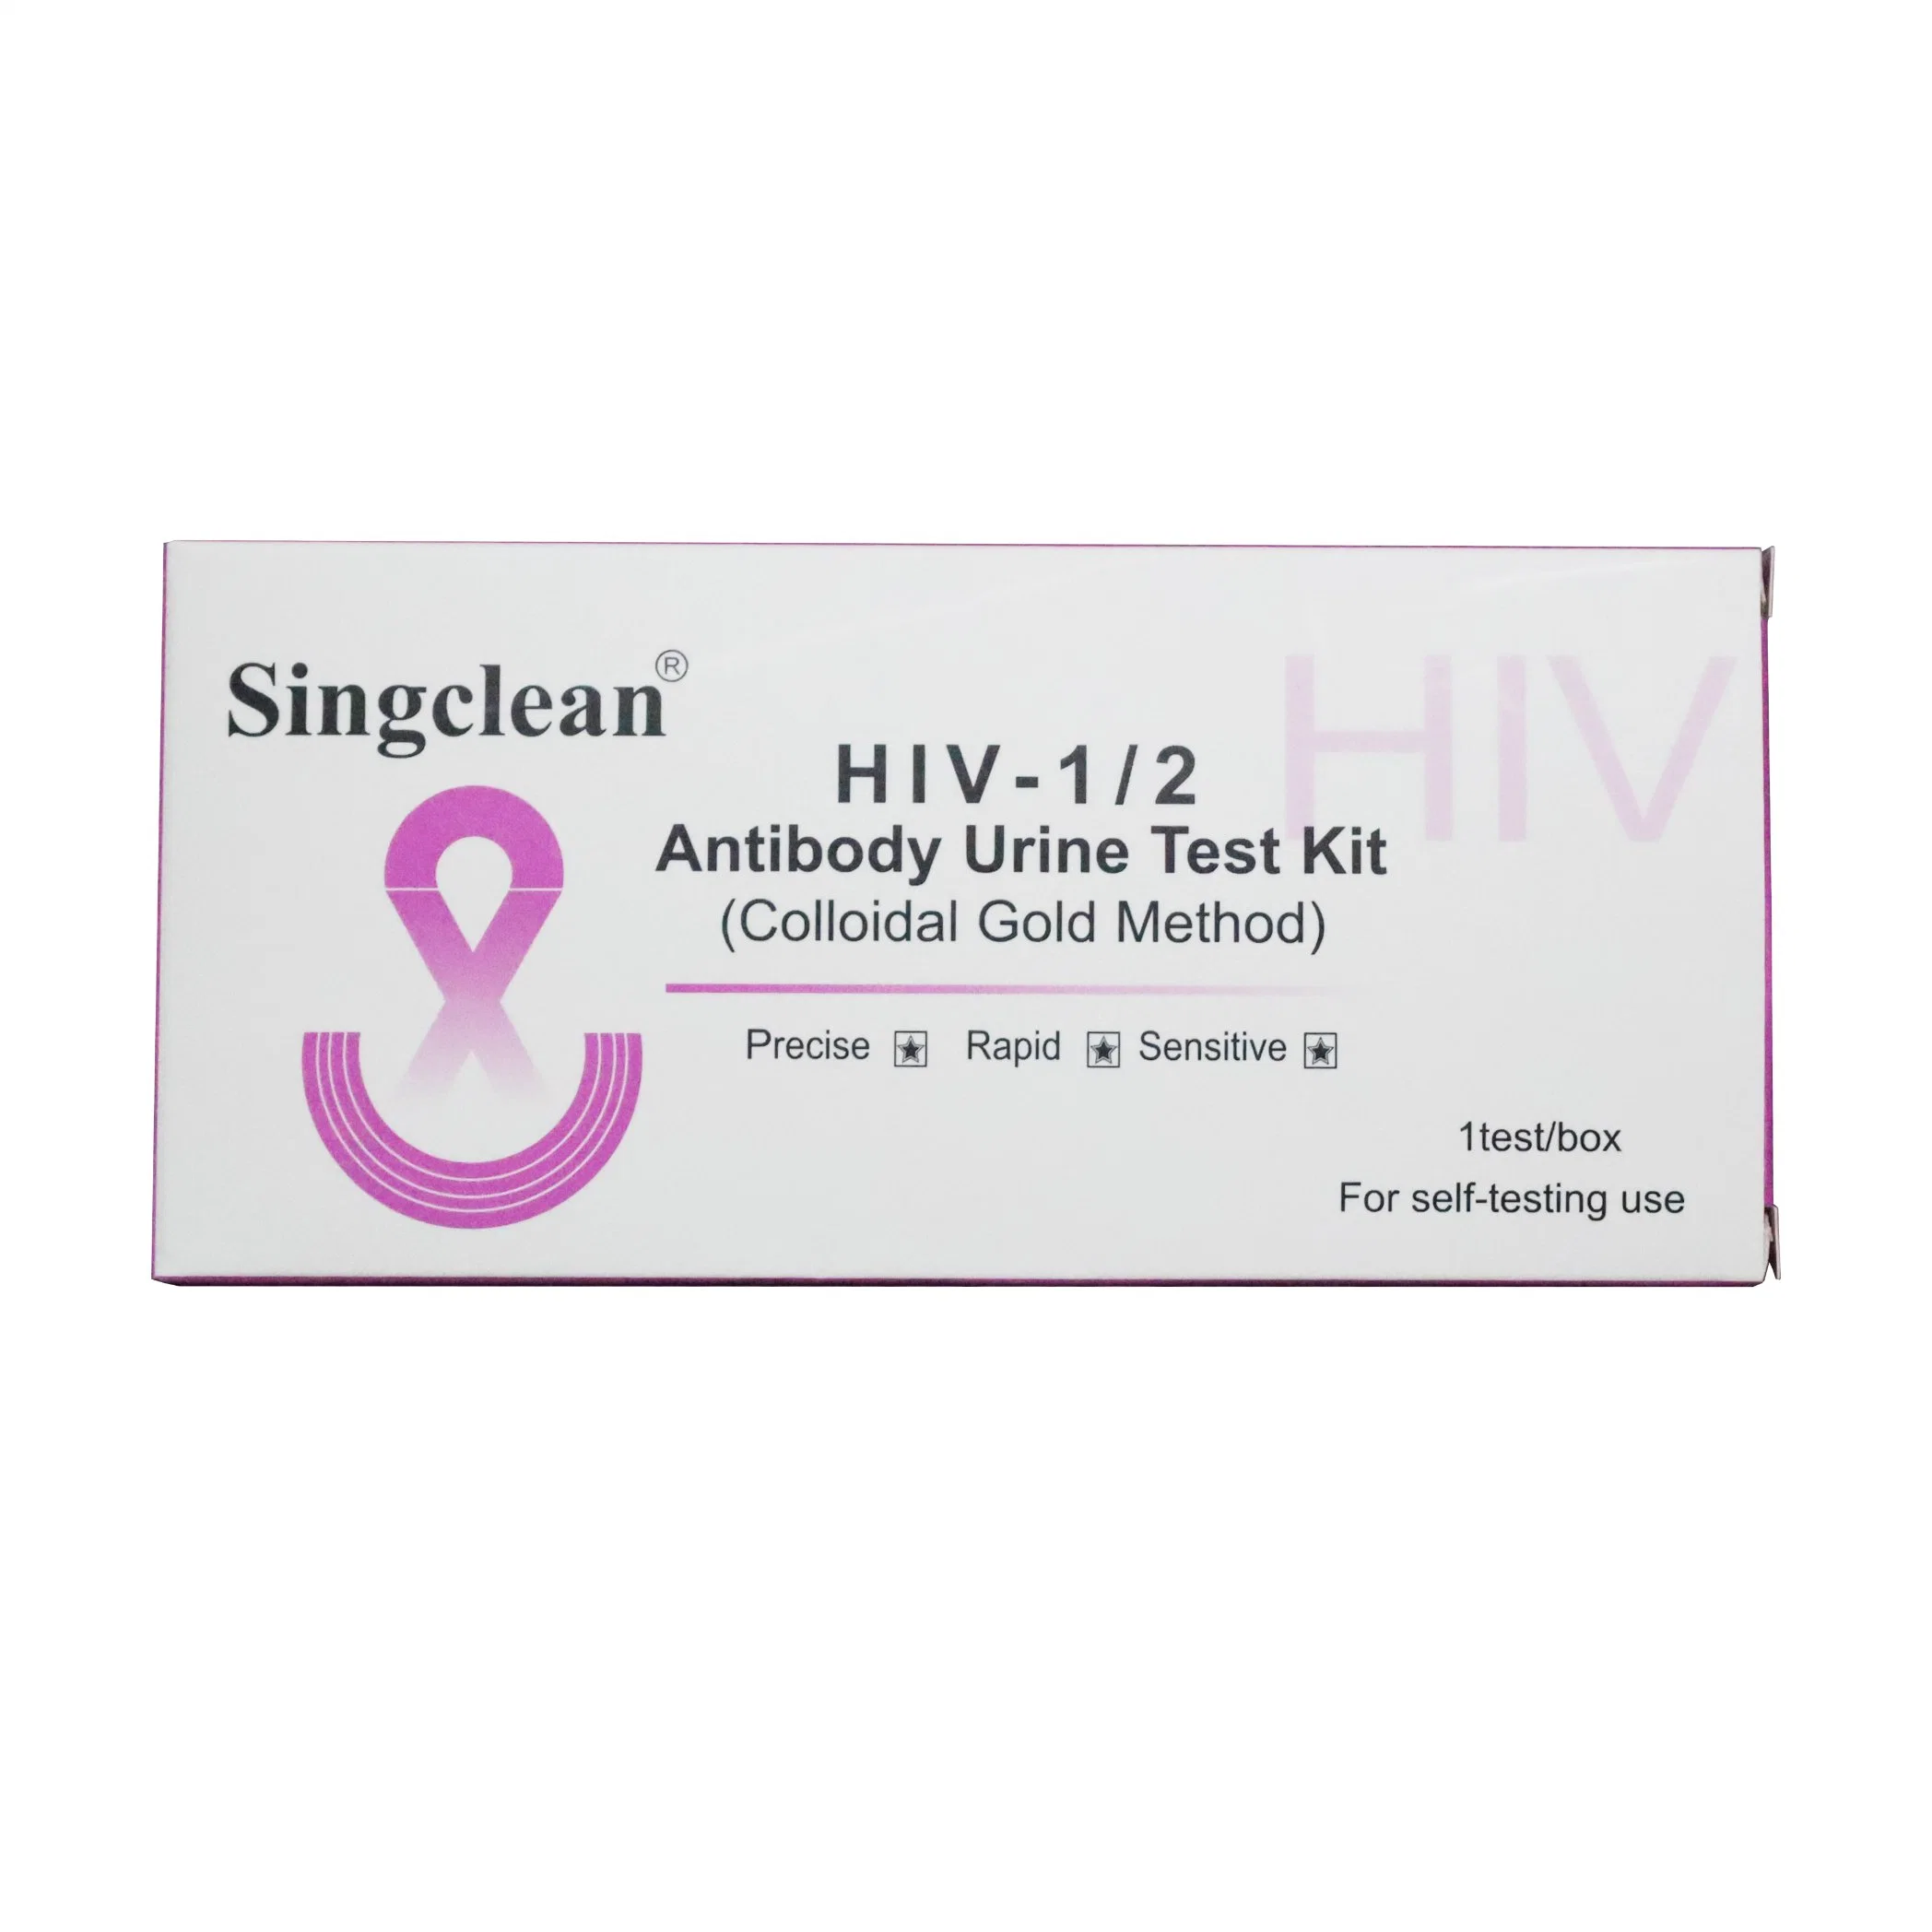 Singclean Quick Rapid One Step orina de laboratorio recoger el VIH 1/2 Dispositivo de prueba de anticuerpos de orina para el síndrome de inmunodeficiencia adquirida